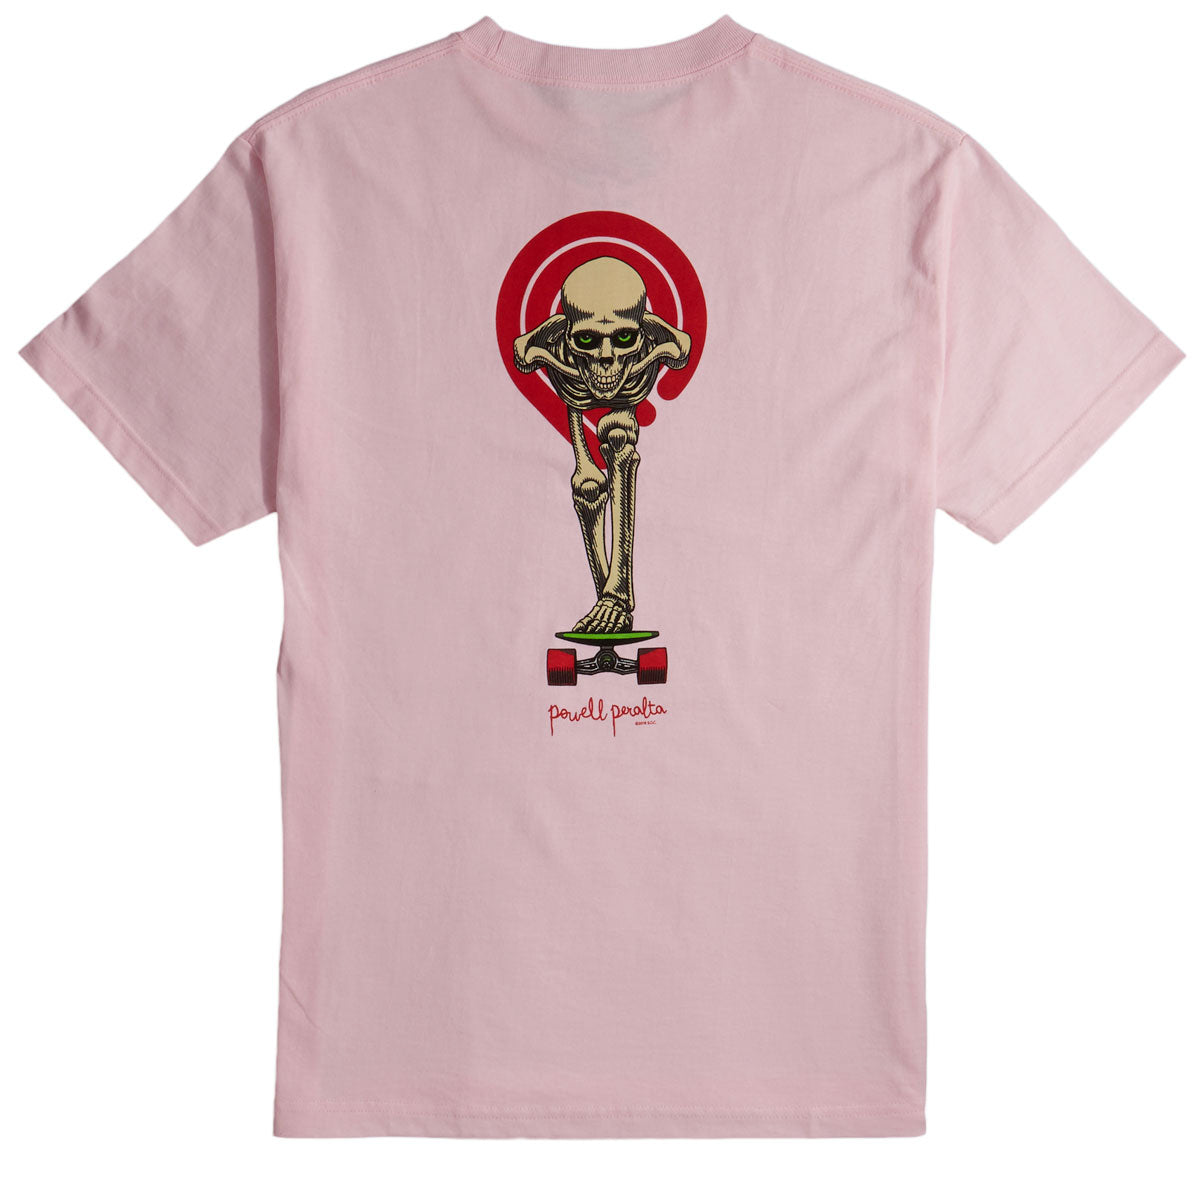 Powell-Peralta Tucking Skeleton T-Shirt - Light Pink image 2